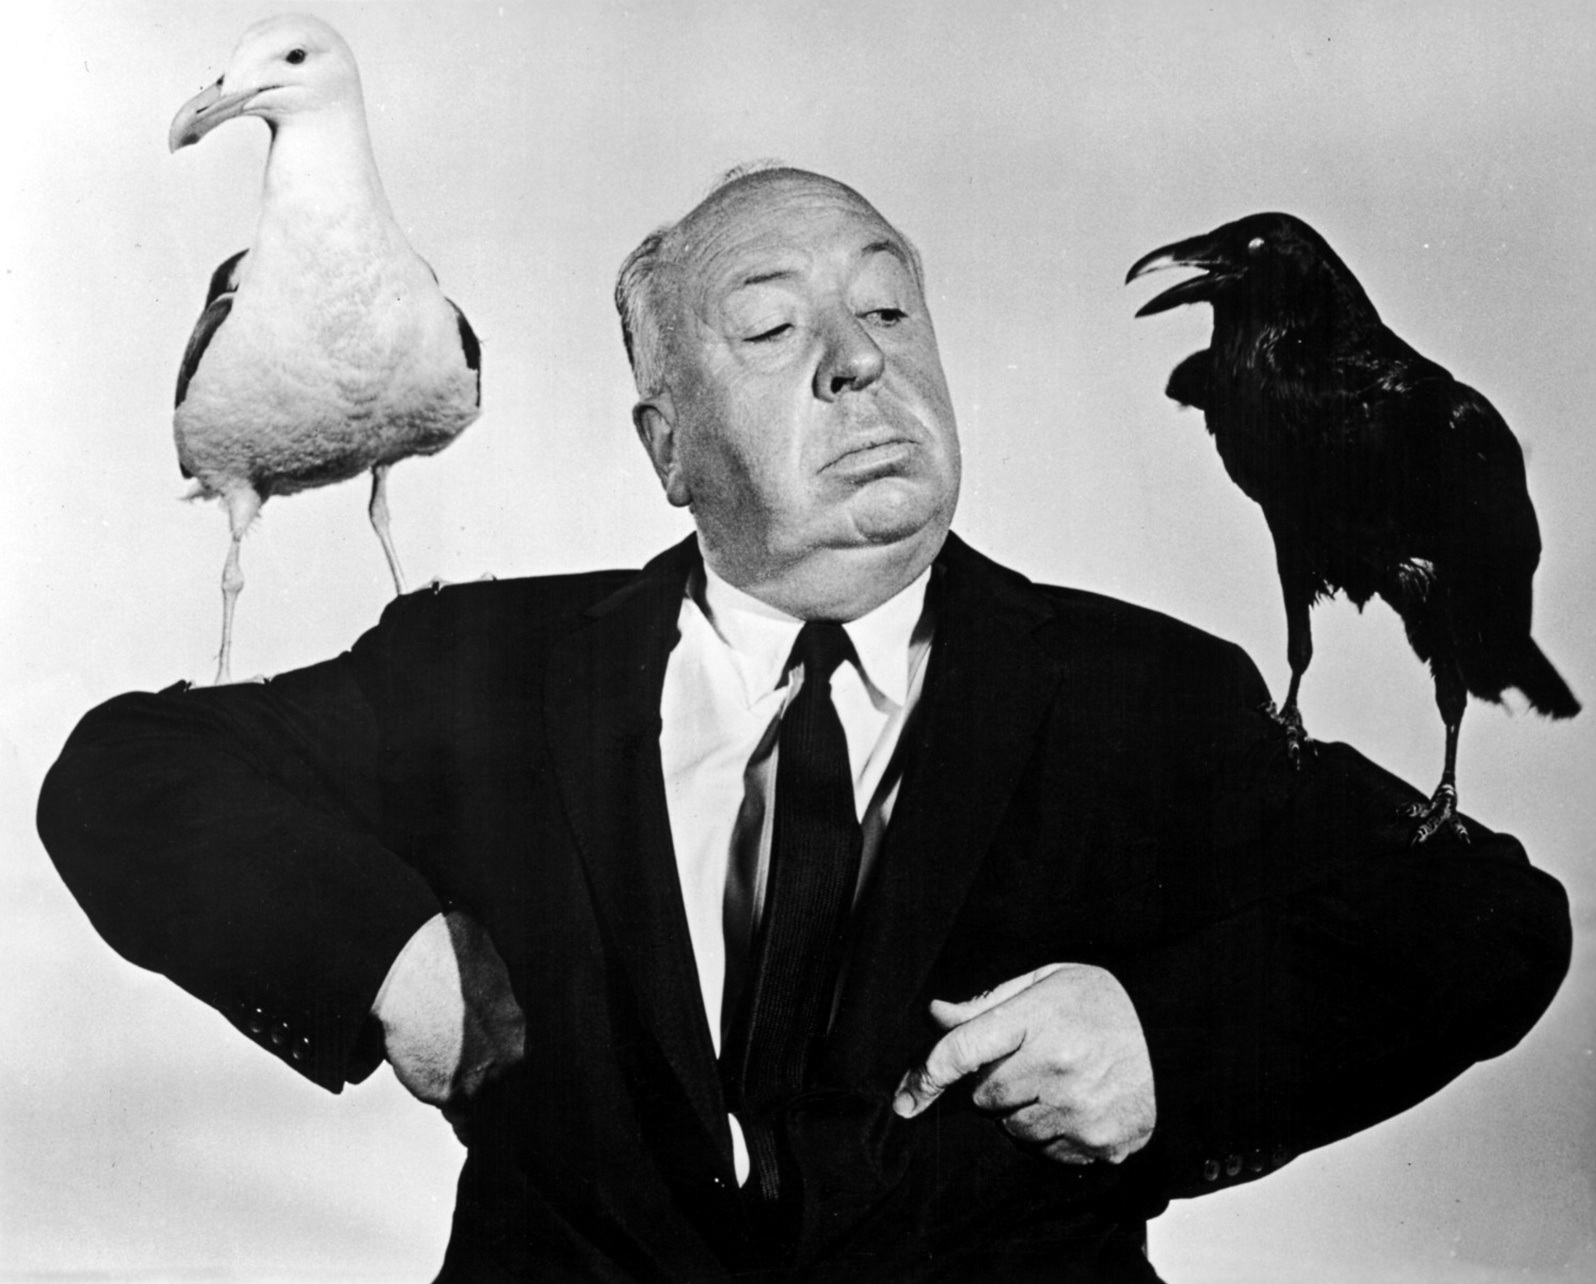 Un 29 de Abril de 1980, muere Alfred Hitchcock